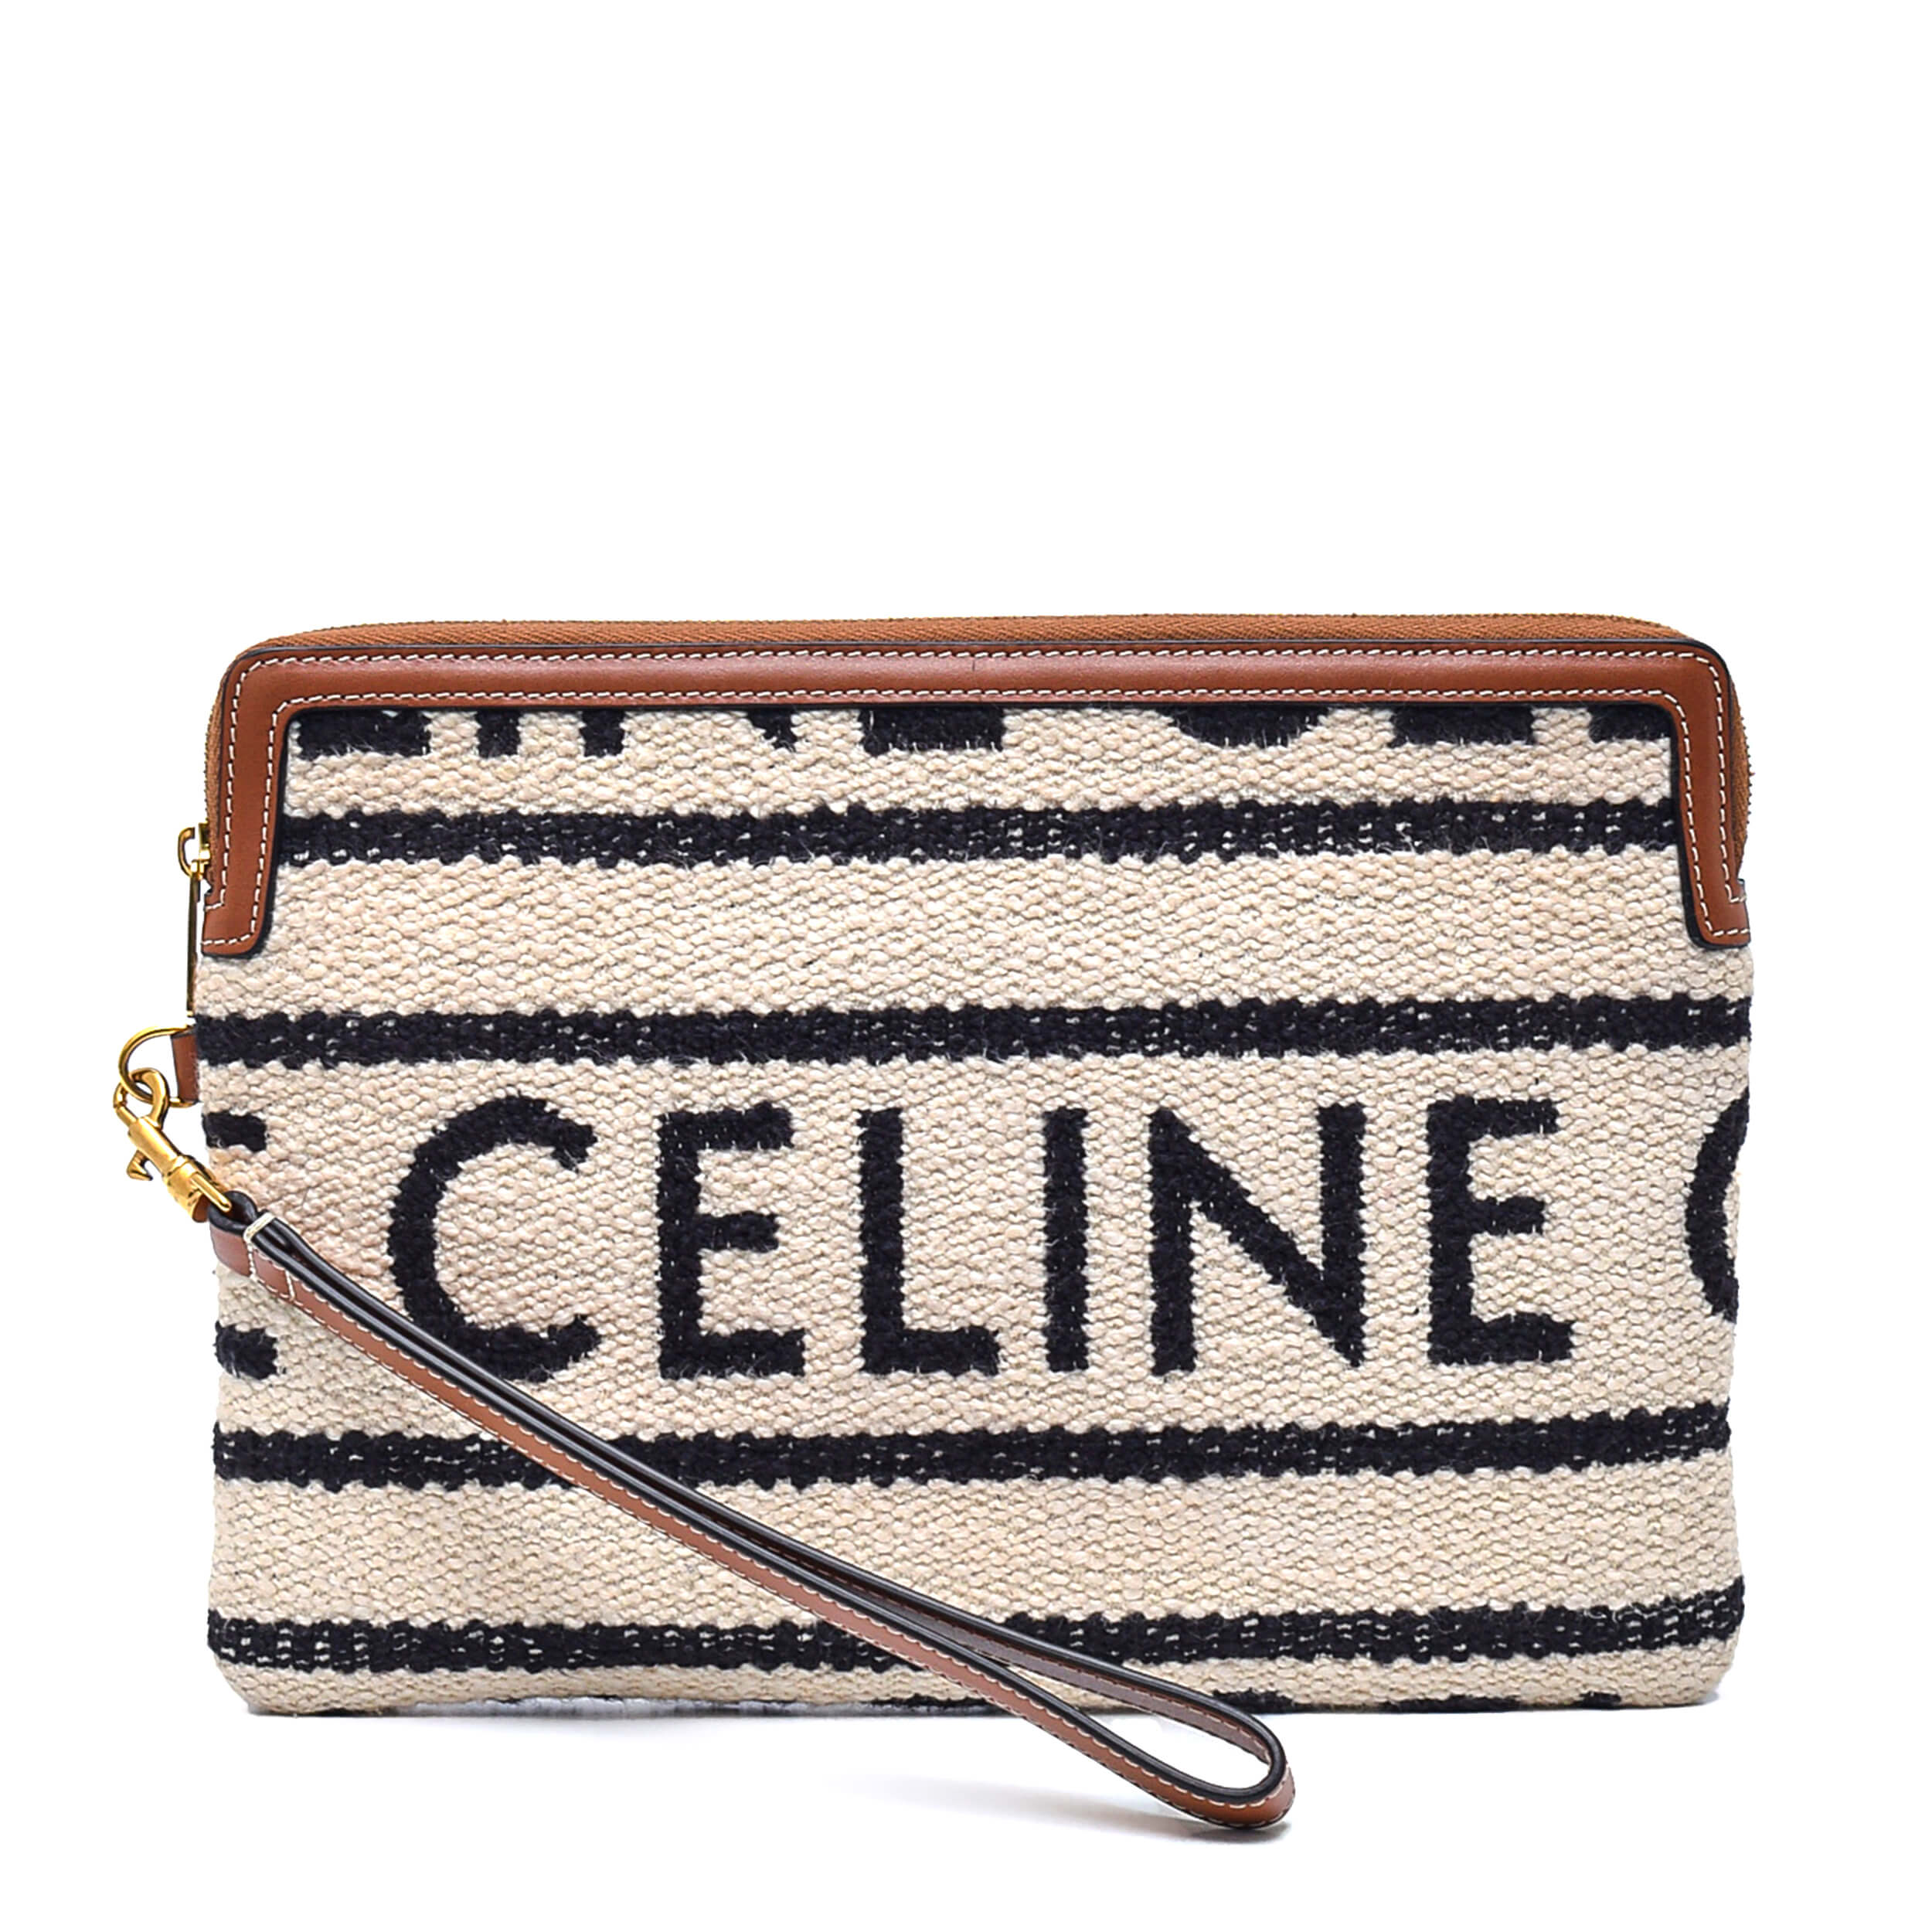 Celine - Beige&Black Cloth Logo Clutch Bag